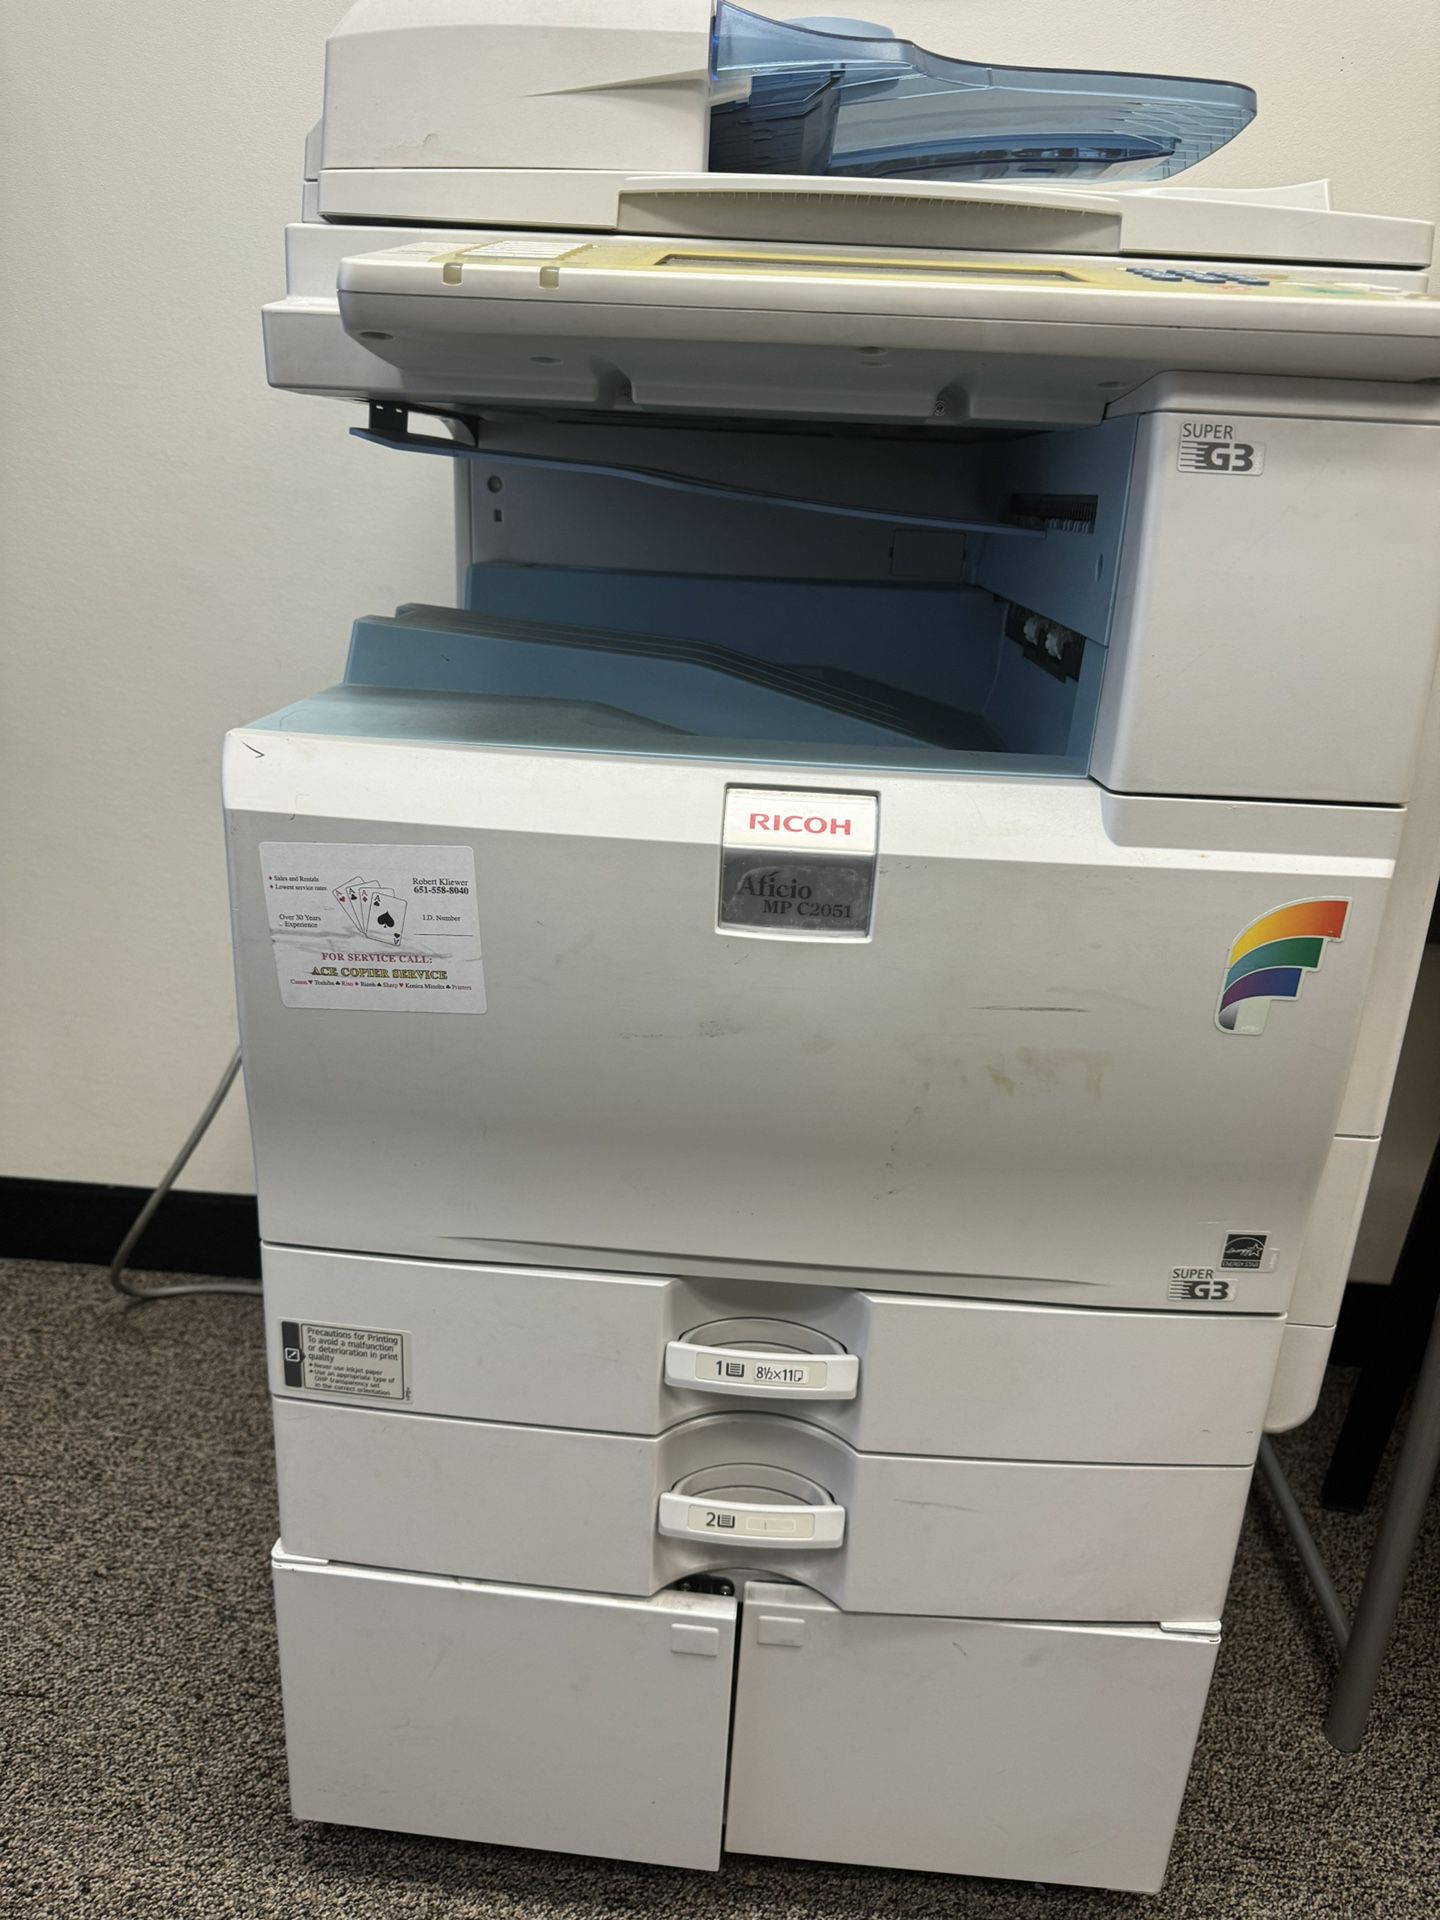 Ricoh Aficio MP C2551 Color Laser Multifunction Printer Copier